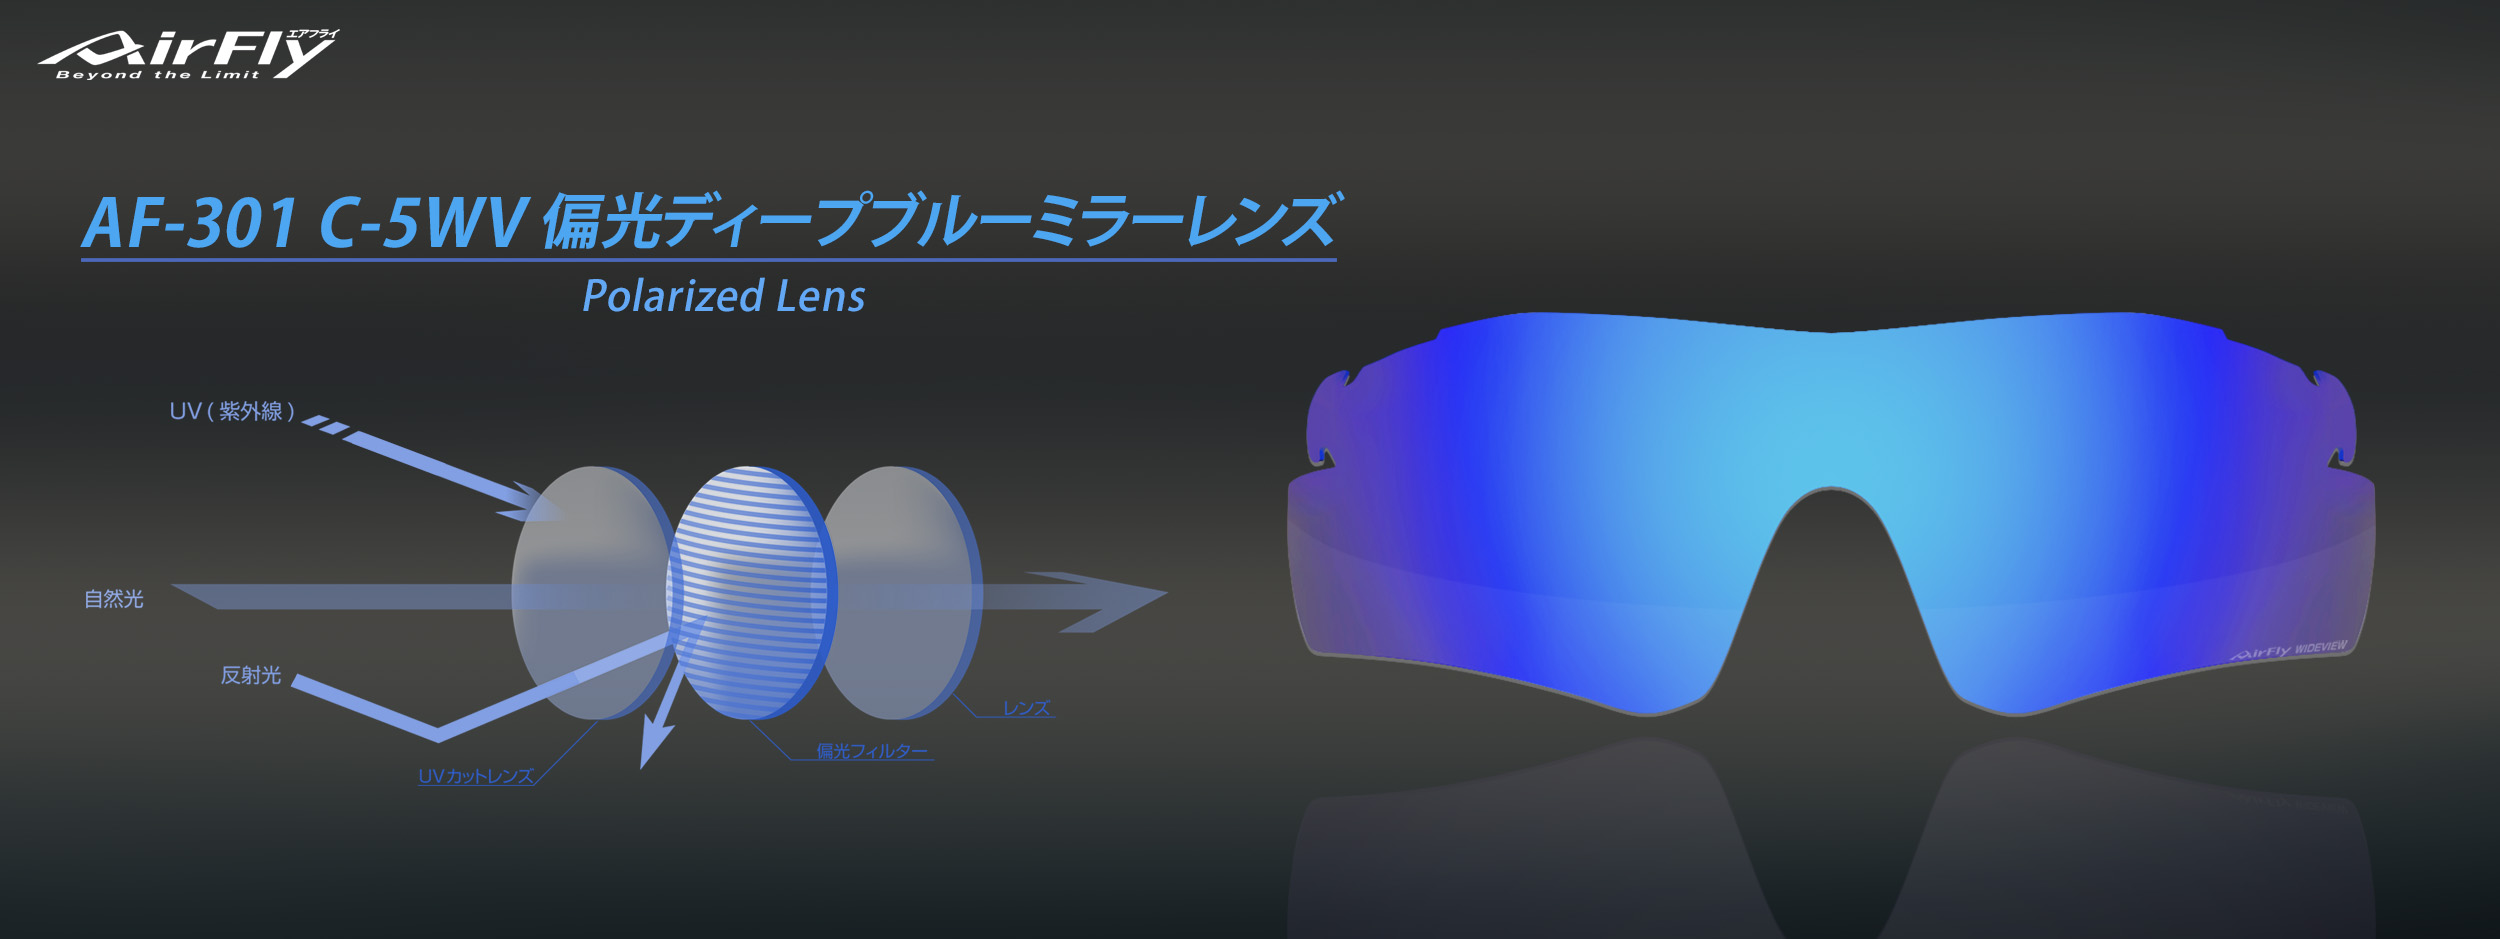 偏光レンズ AF-301 C-5WV 紫外線 UV スポーツサングラス スポーツアイウェア さばえ